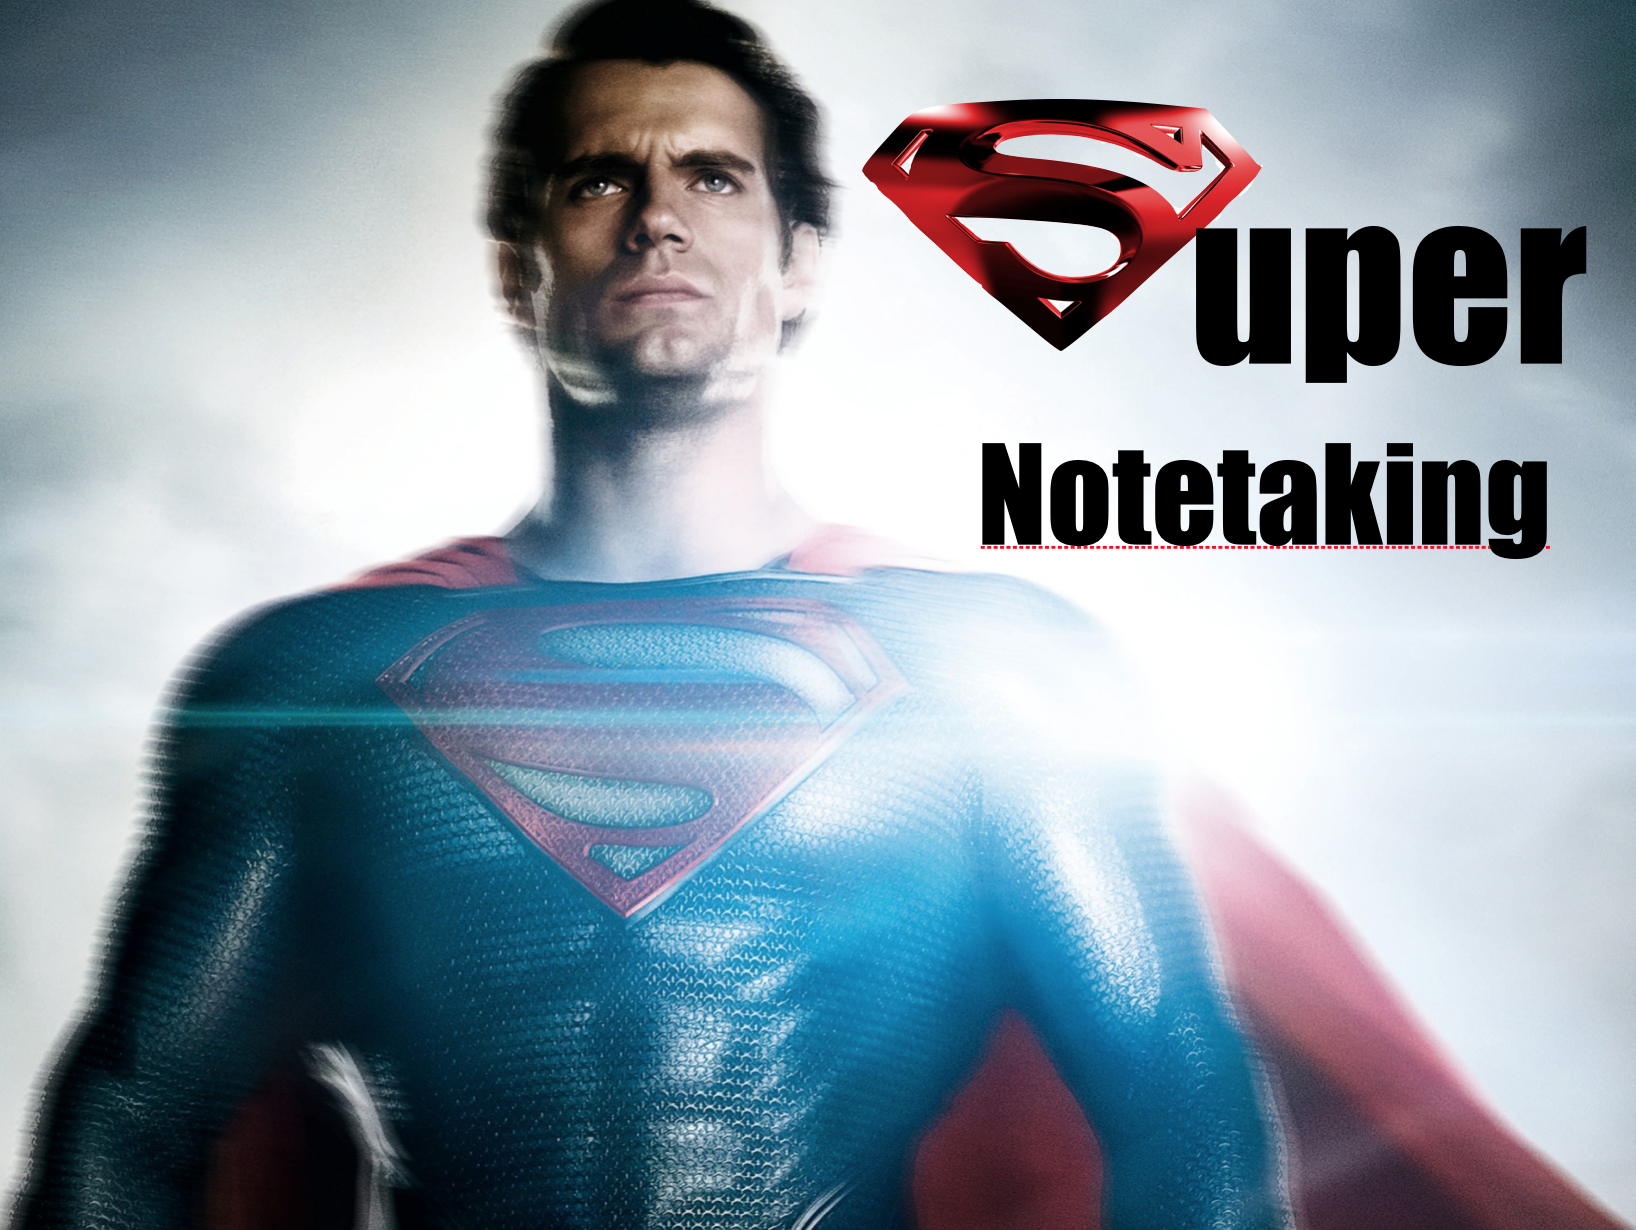 notetaker or note taker